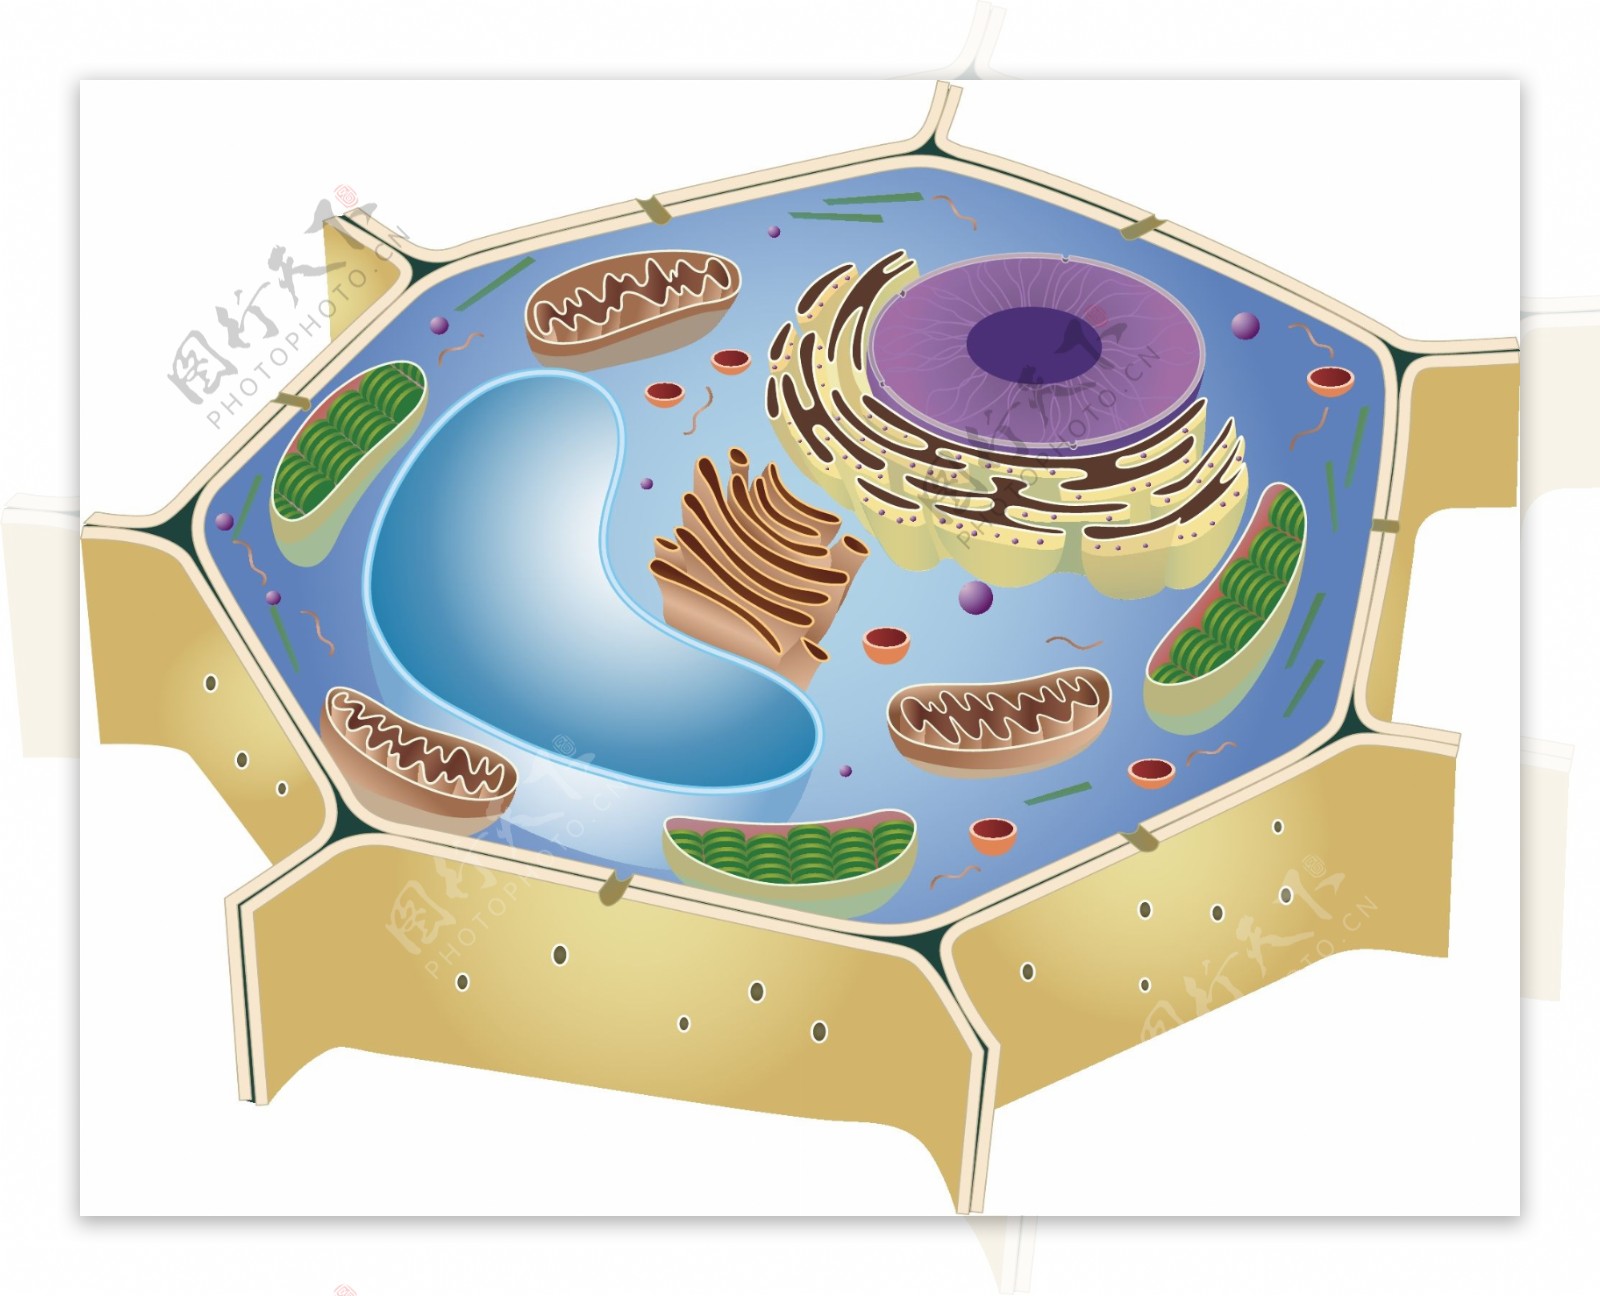 真核细胞（细胞生物学）_技点百科_技点网